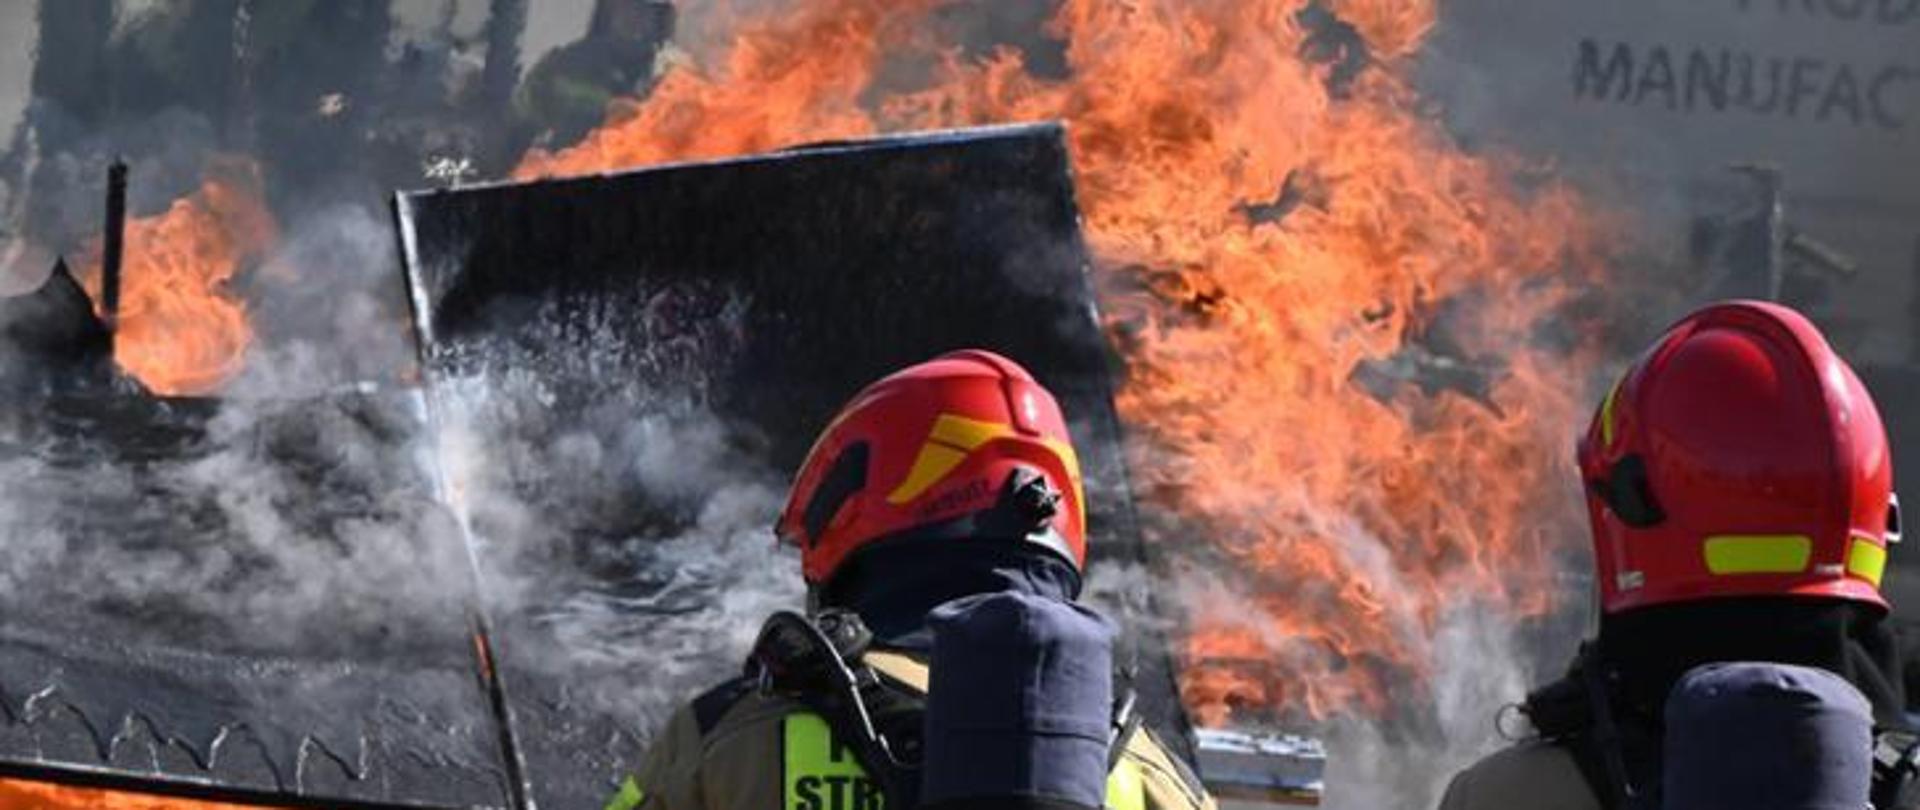 Dwaj strażacy odwróceni tyłem gaszą pożar panela fotowoltaicznego. Widoczne płomienie, dym i spalone materiały.